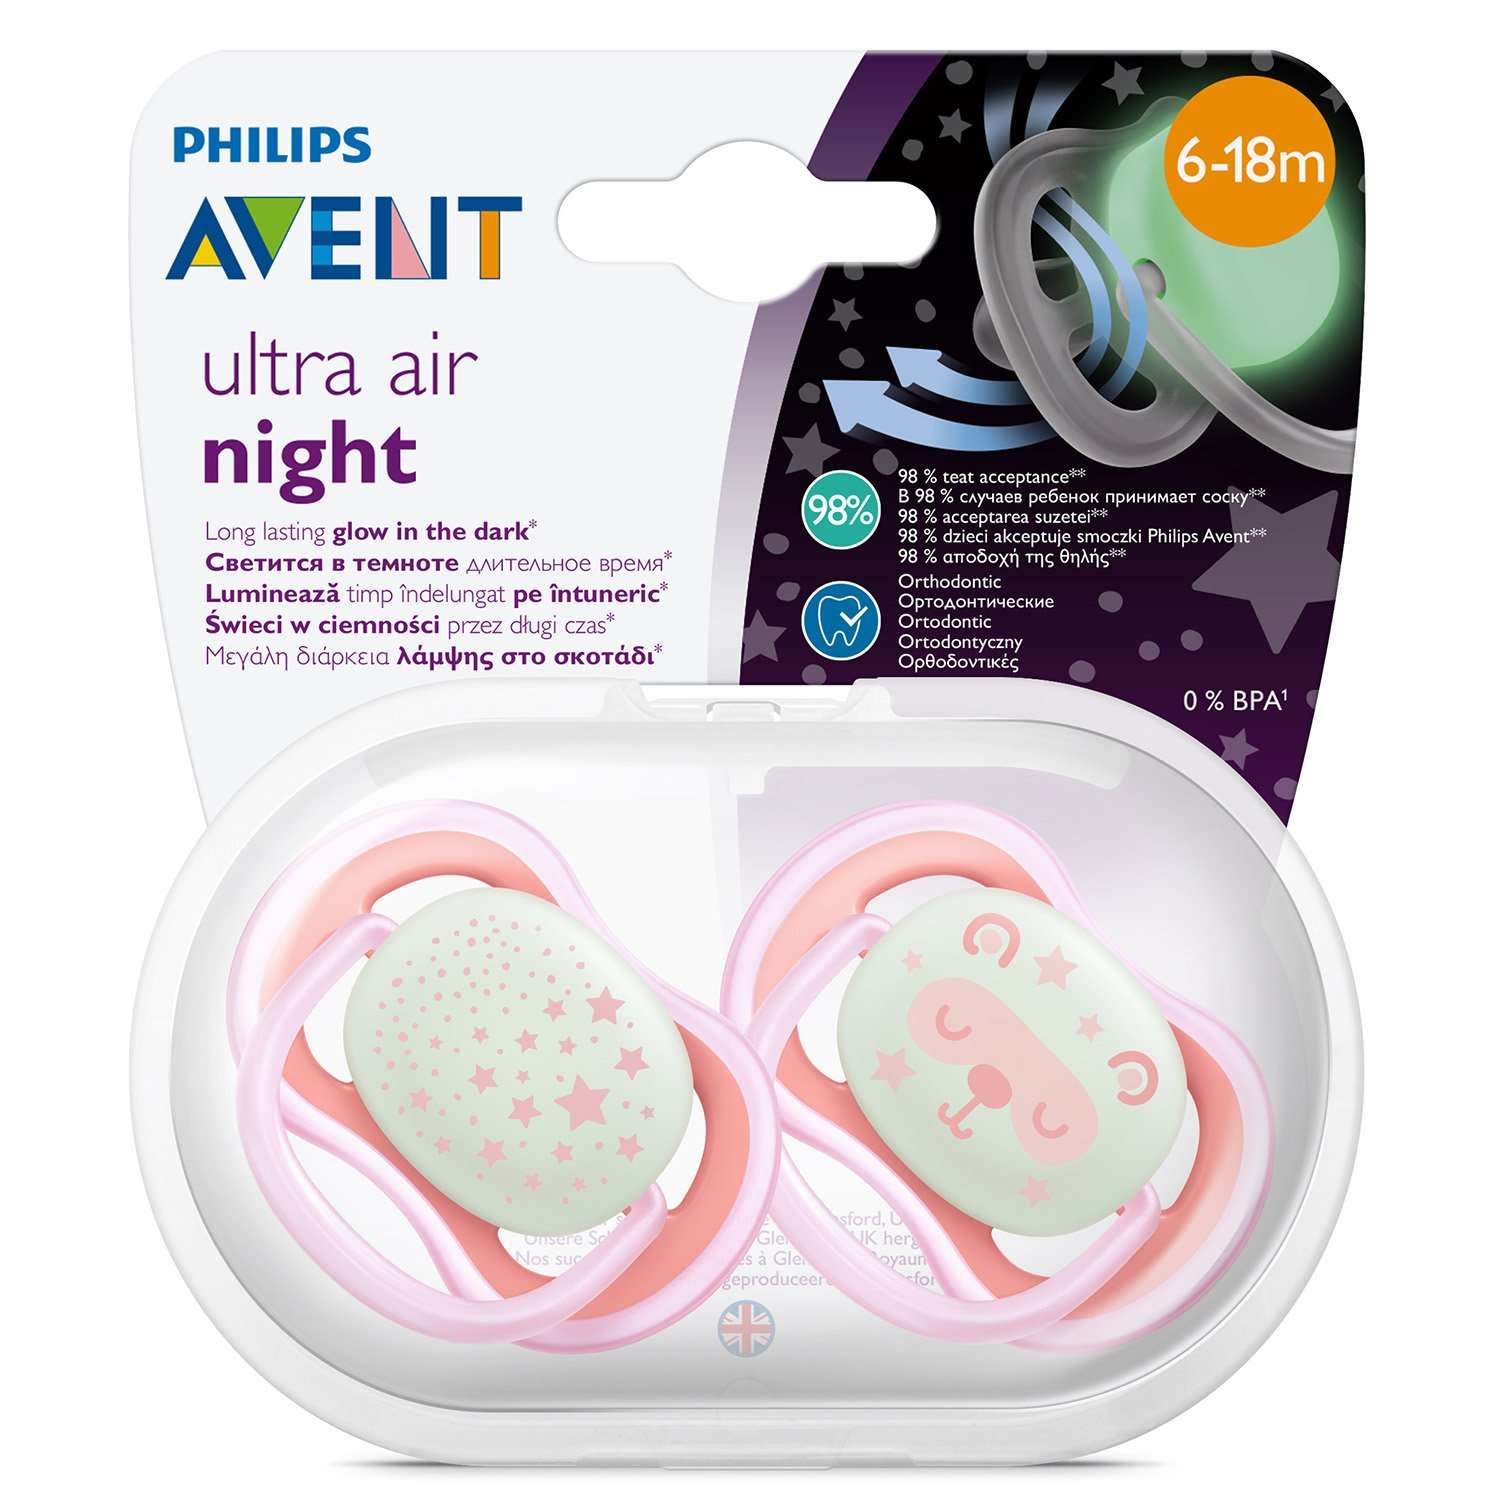 Светящаяся соска-пустышка Philips Avent ultra air night SCF376/22 силиконовая, с футляром для хранения и стерилизации, 6-18 мес, 2 шт - фото 14